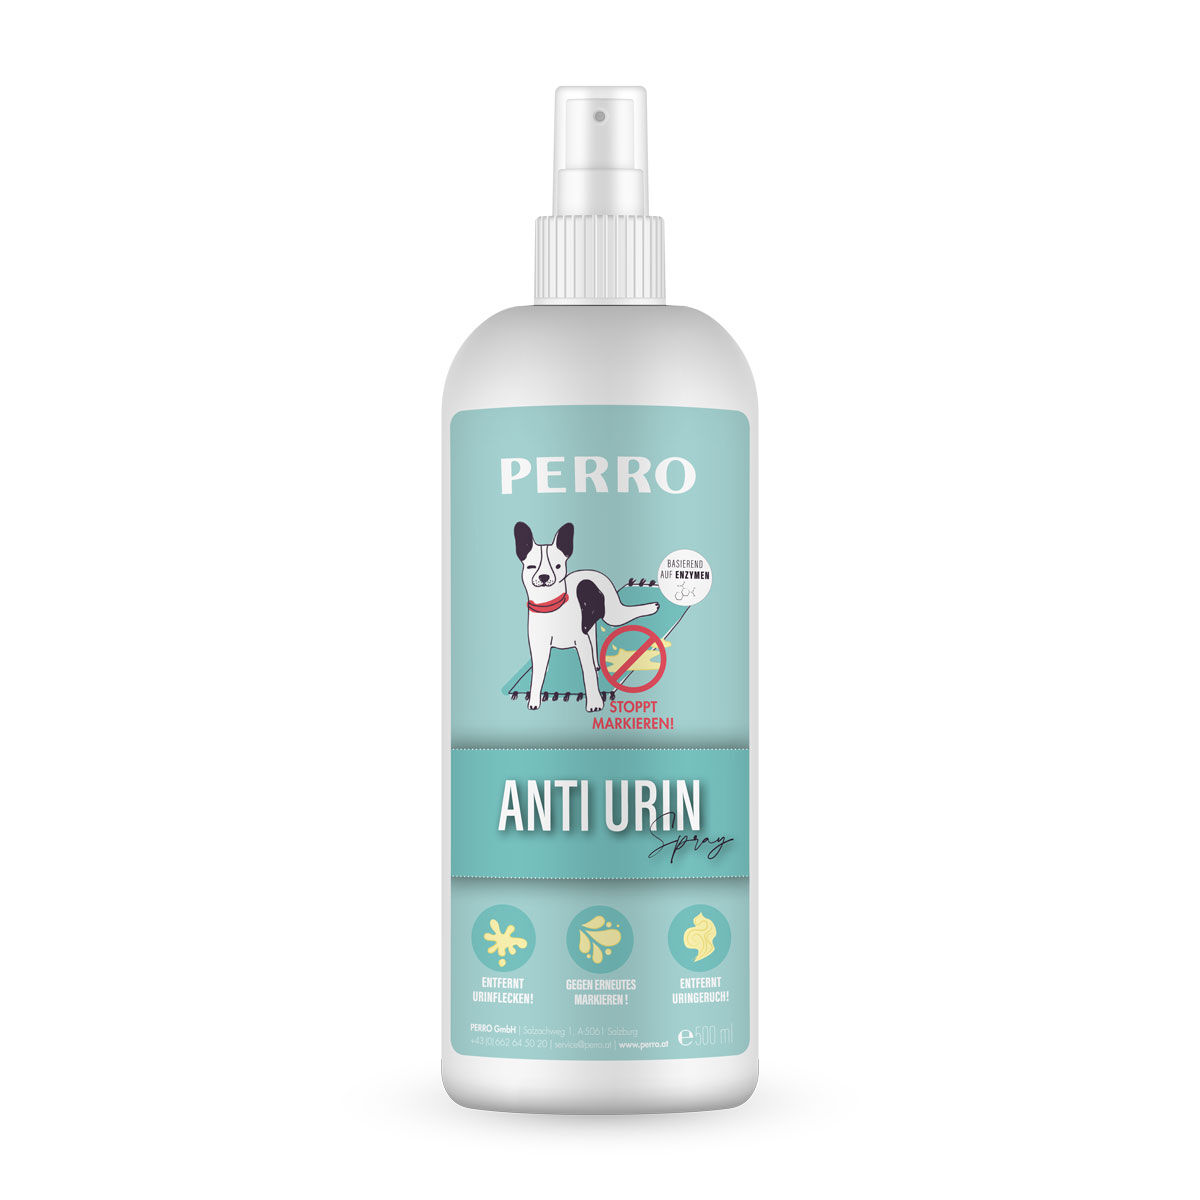 Perro-Anti-Urin-Spray-Hund-markieren-Harn-Uringeruch-14226